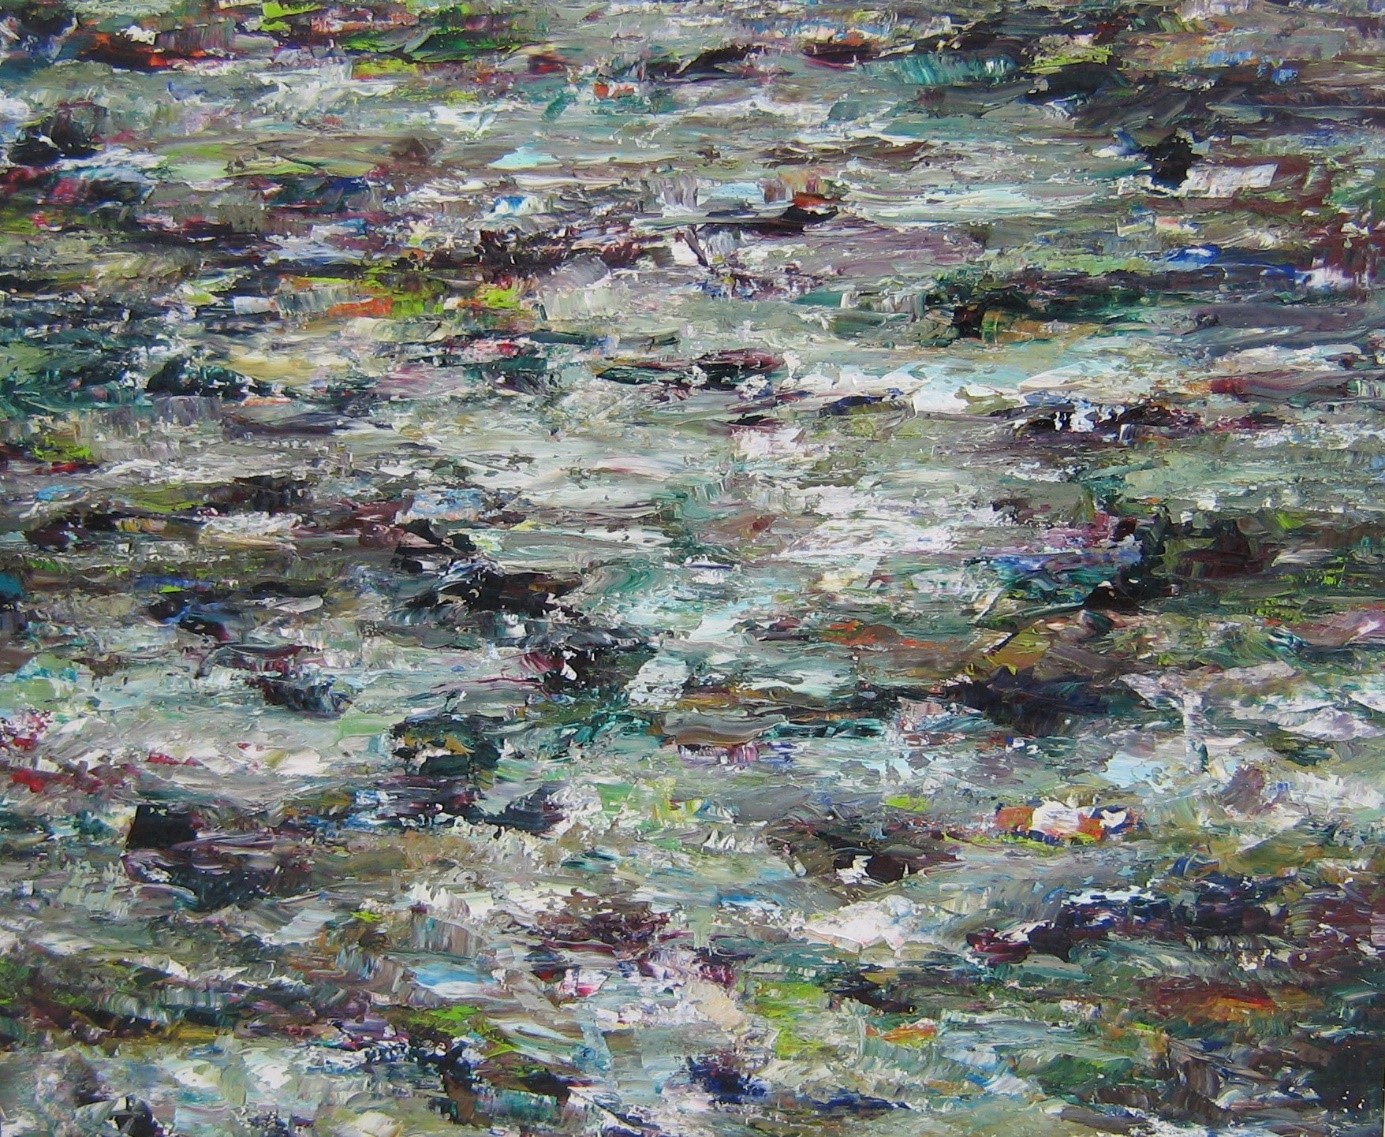 Rudi Weiss
Flussbild (Track)
2010
Öl auf Leinwand
120 x 140 cm
wer008ko